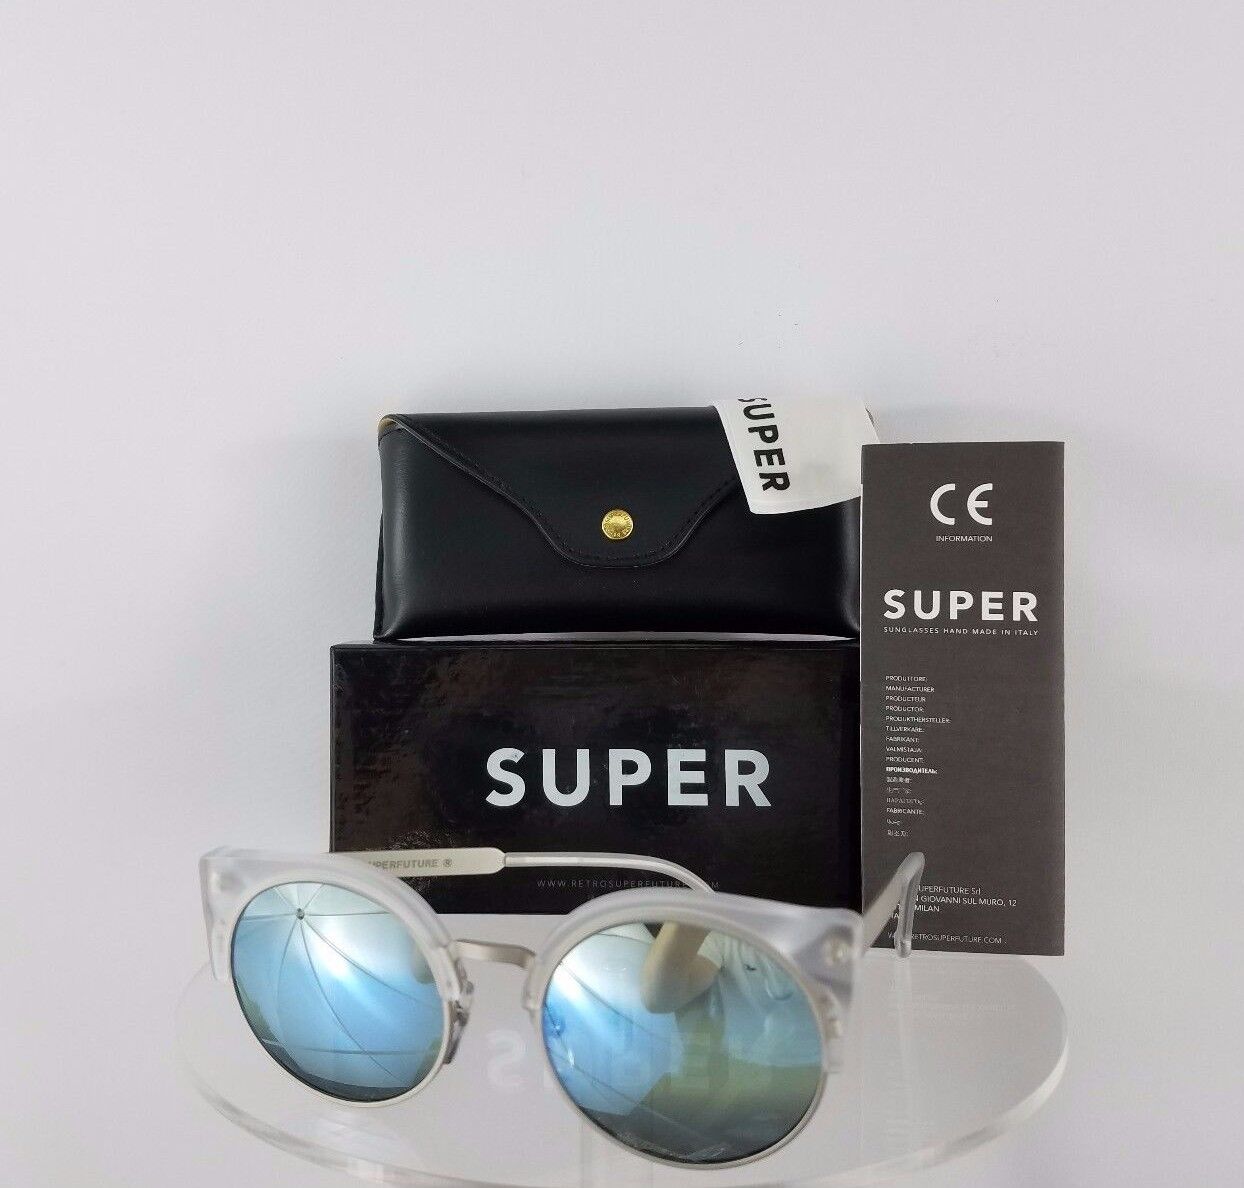 Brand New Authentic Retrosuperfuture SUPER 3FX AG6 Sunglasses Ilaria Clear